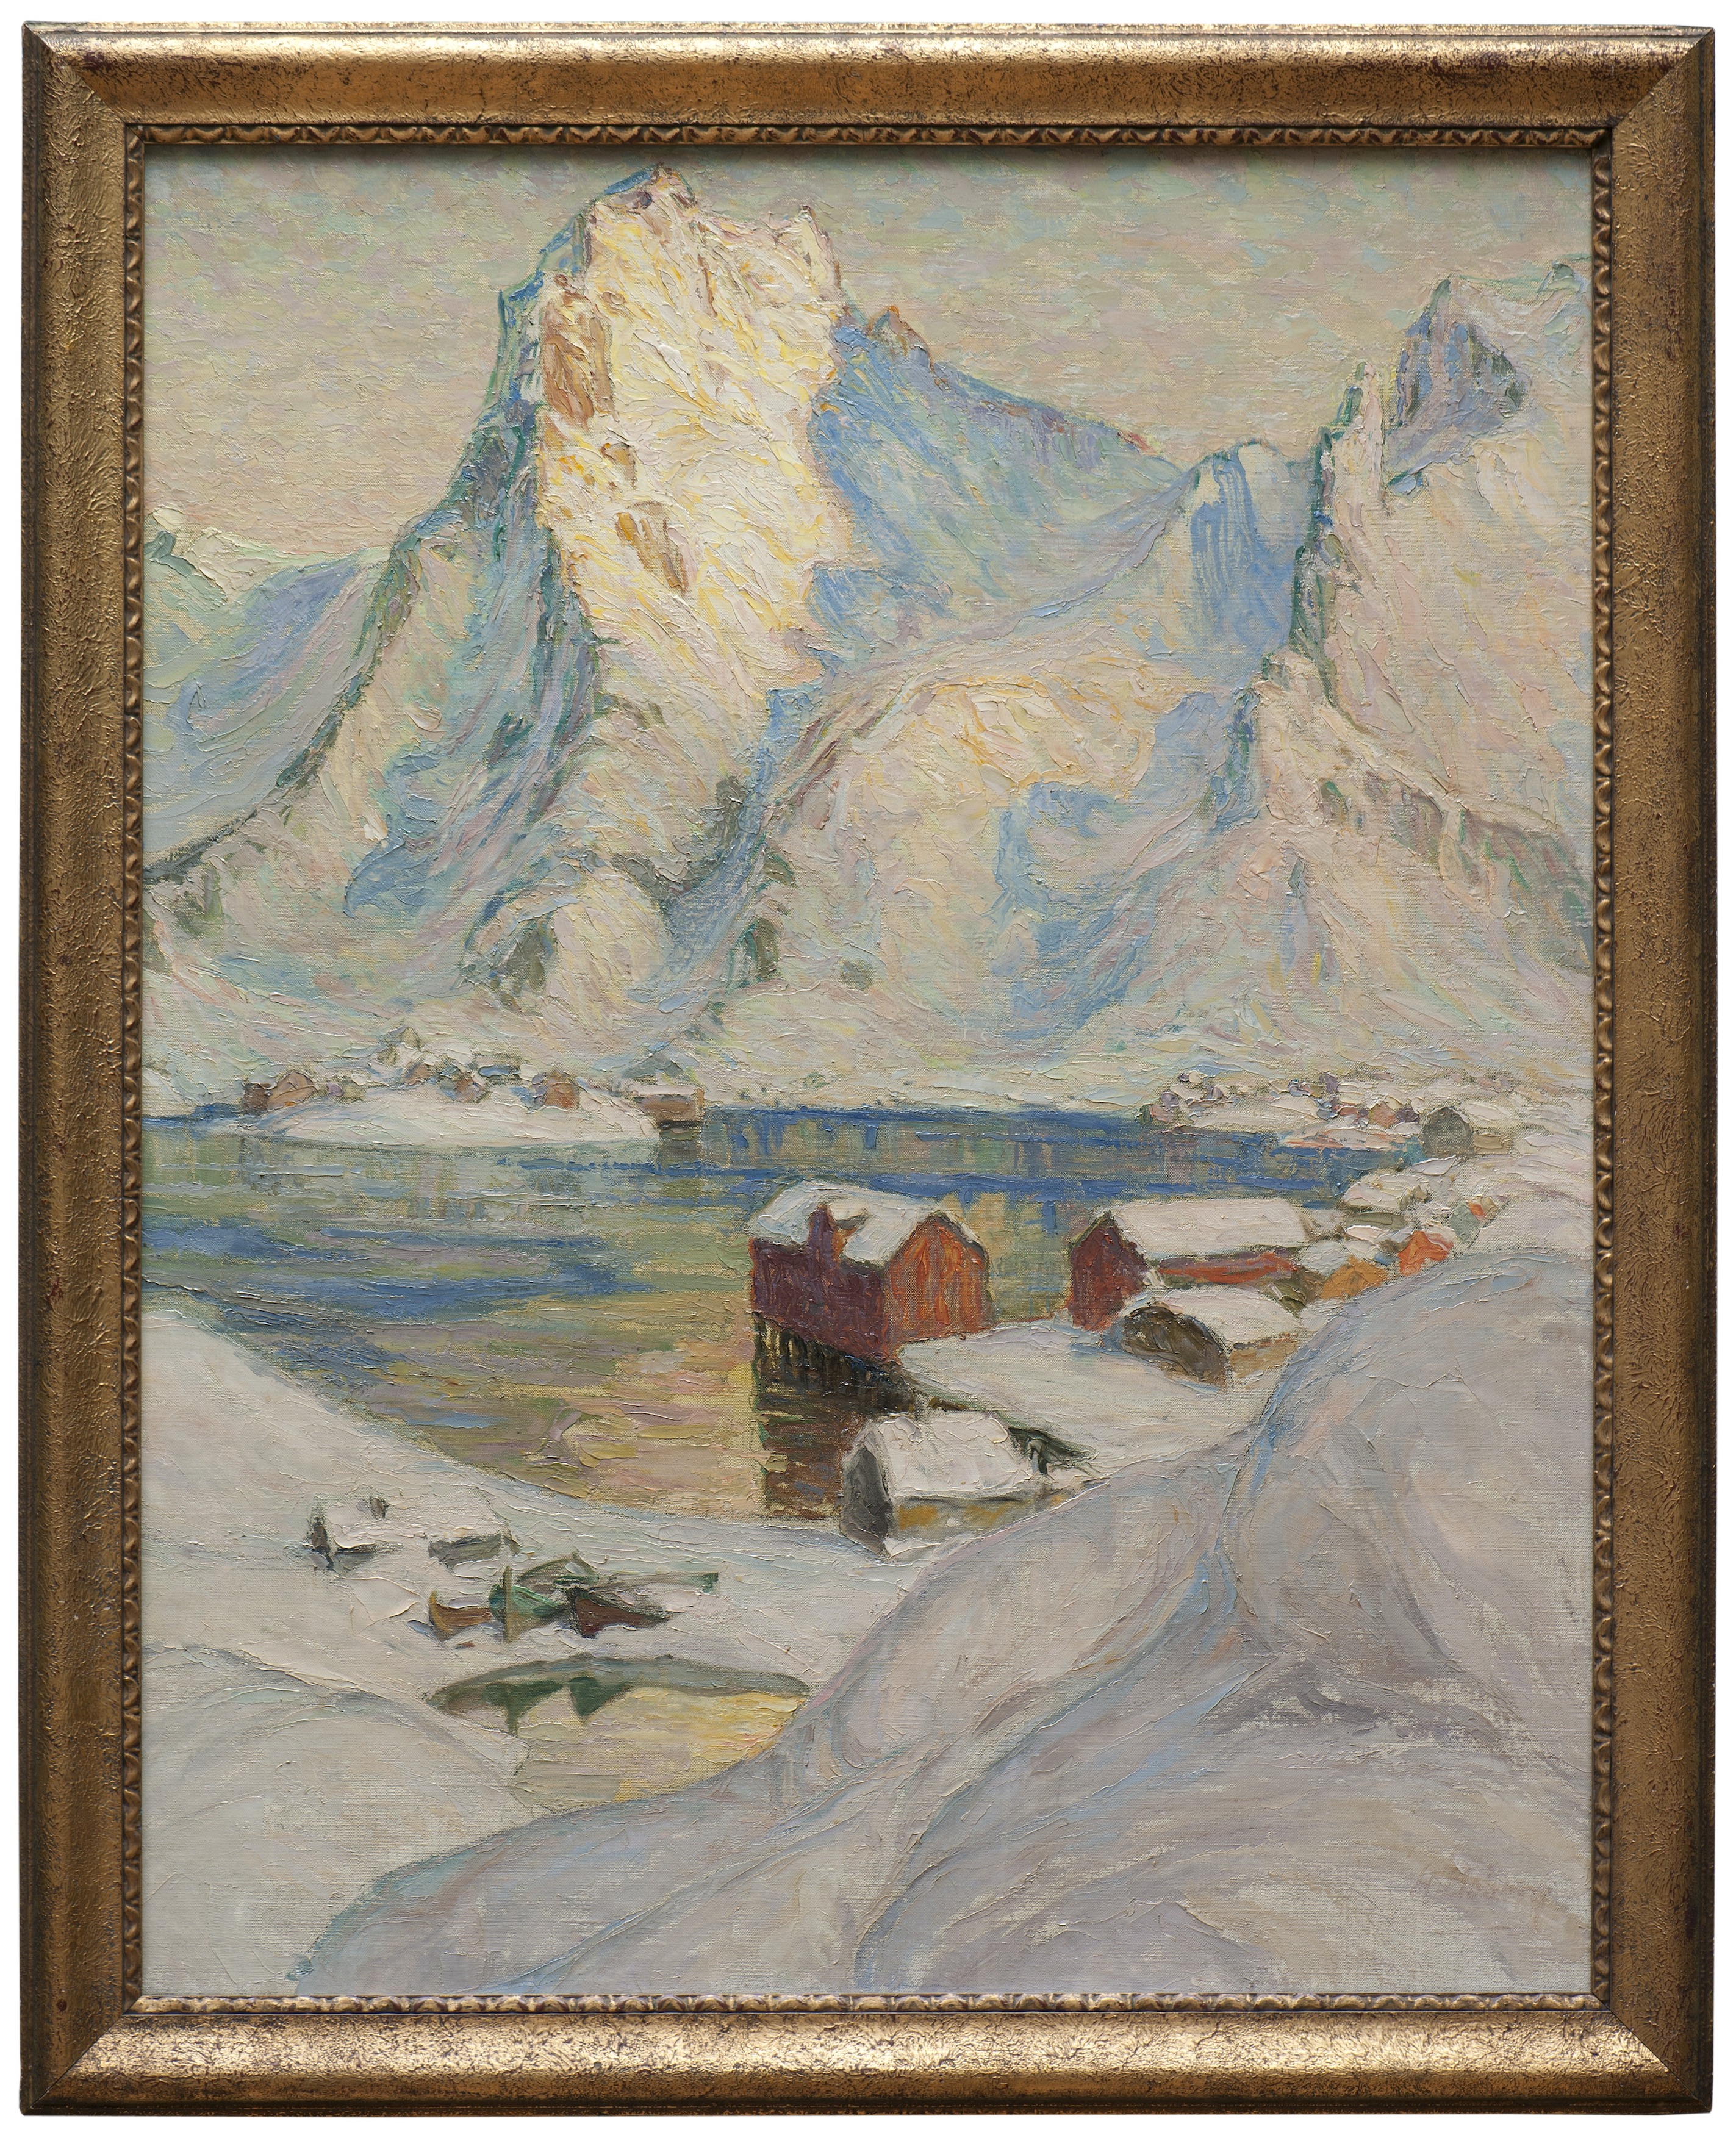 يوم ربيعي في القطب الشمالي (غرفة من شمال النرويج) by Anna Boberg - المنتصف الأول من القرن العشرين - 100 x 80 سم 